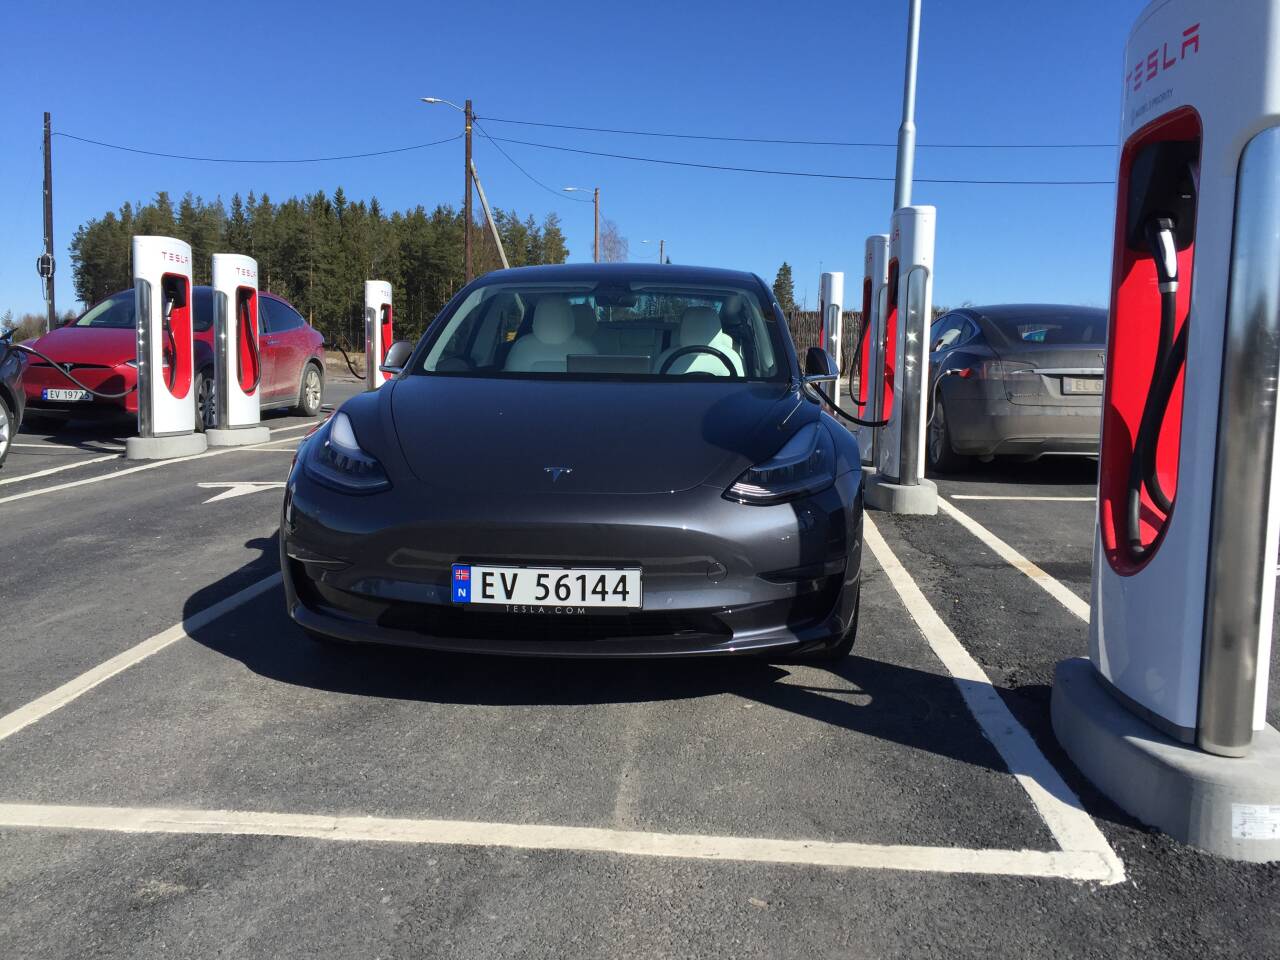 STØRST: Teslas største ladestasjon i Europa ligger på Nebbenes ved Eidsvoll. Foto: Morten Abrahamsen / NTB